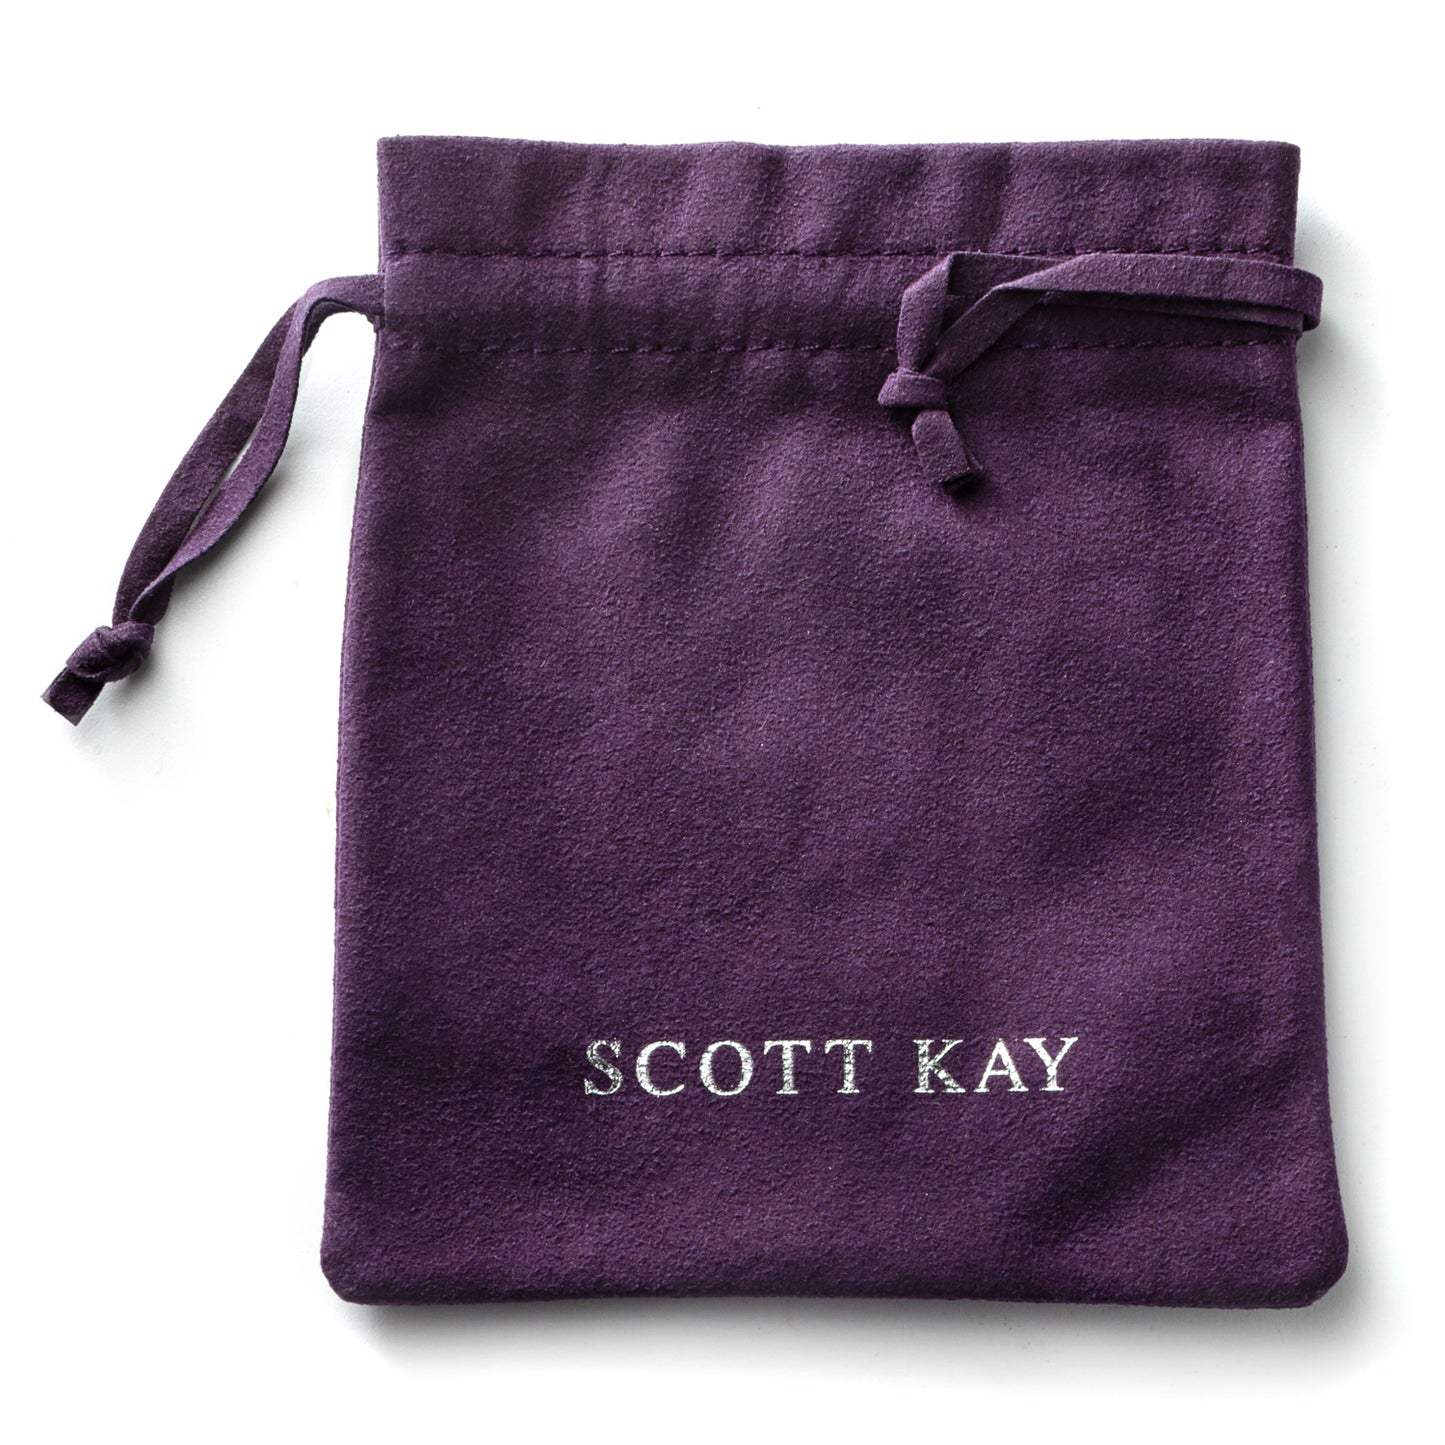 Scott Kay Braided Leather Bracelet, Black, 8.5 Length